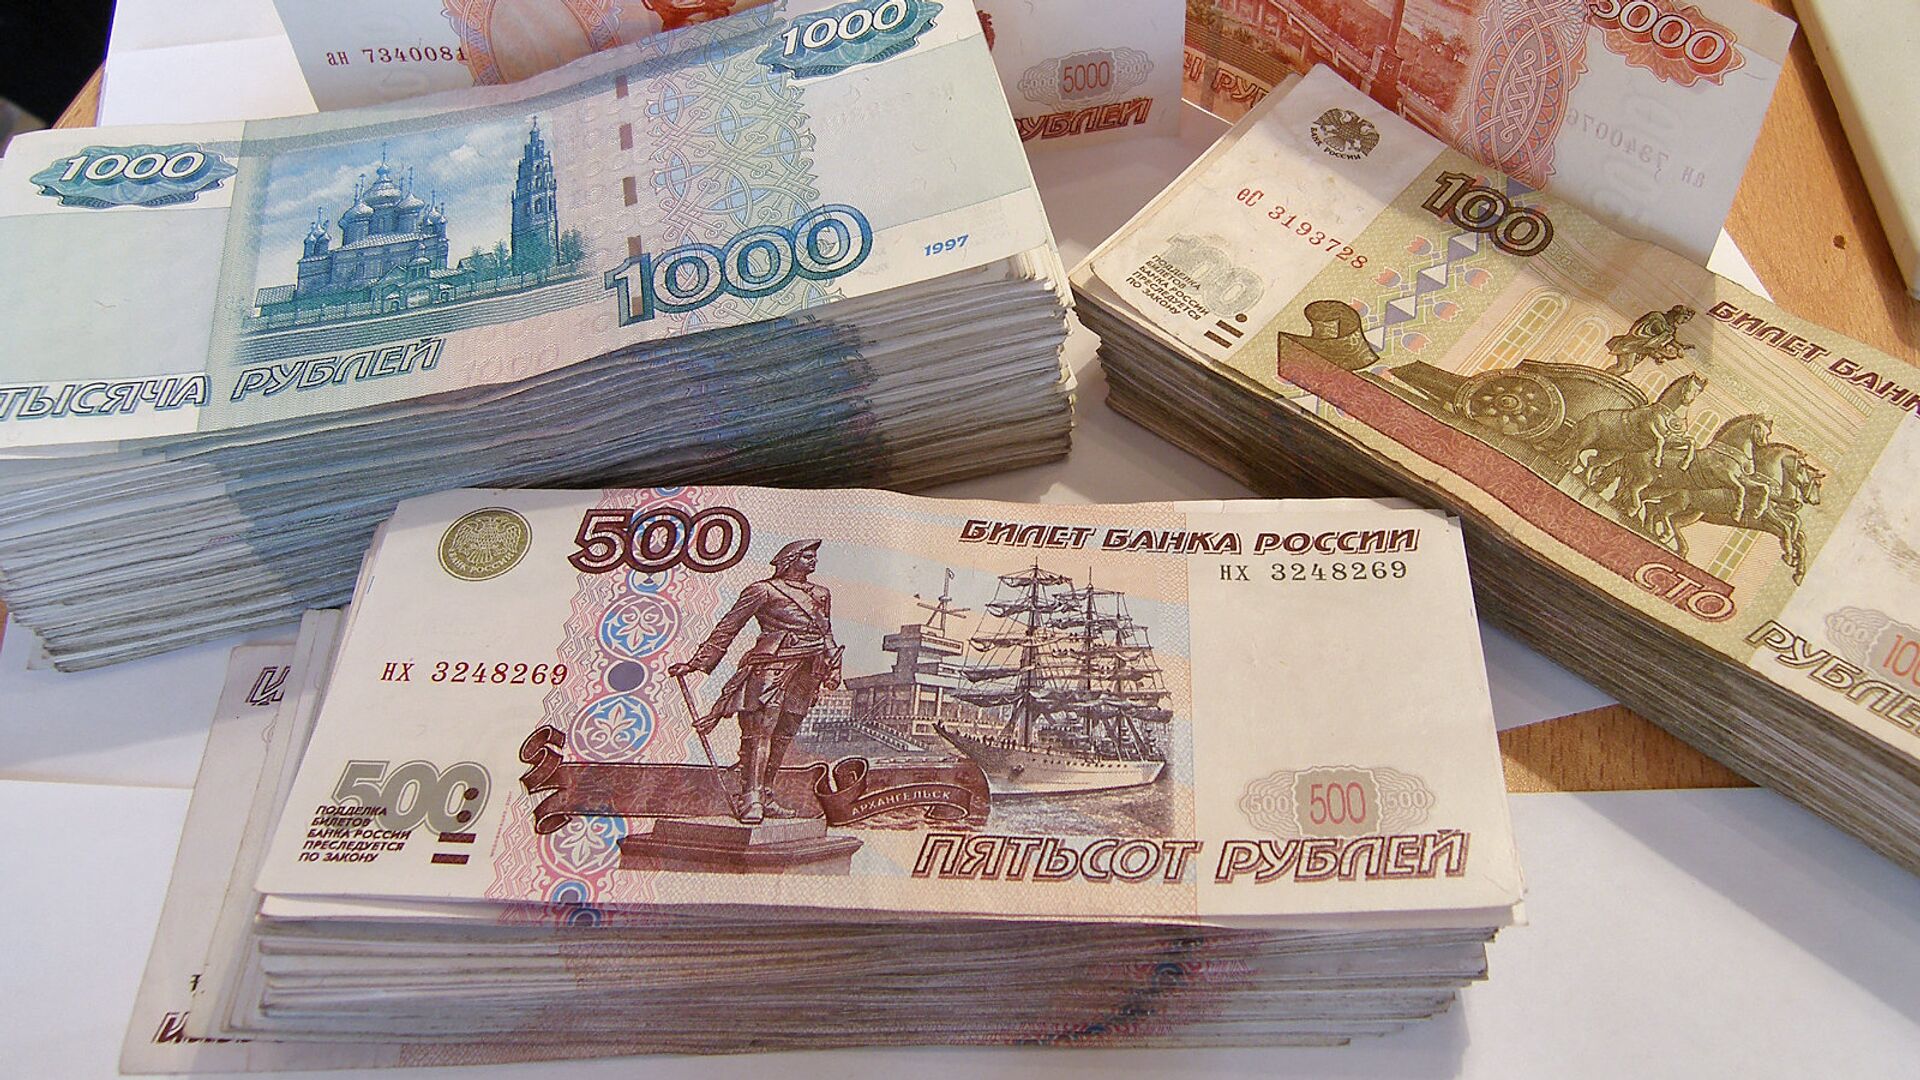 юань рубль обмен валют в